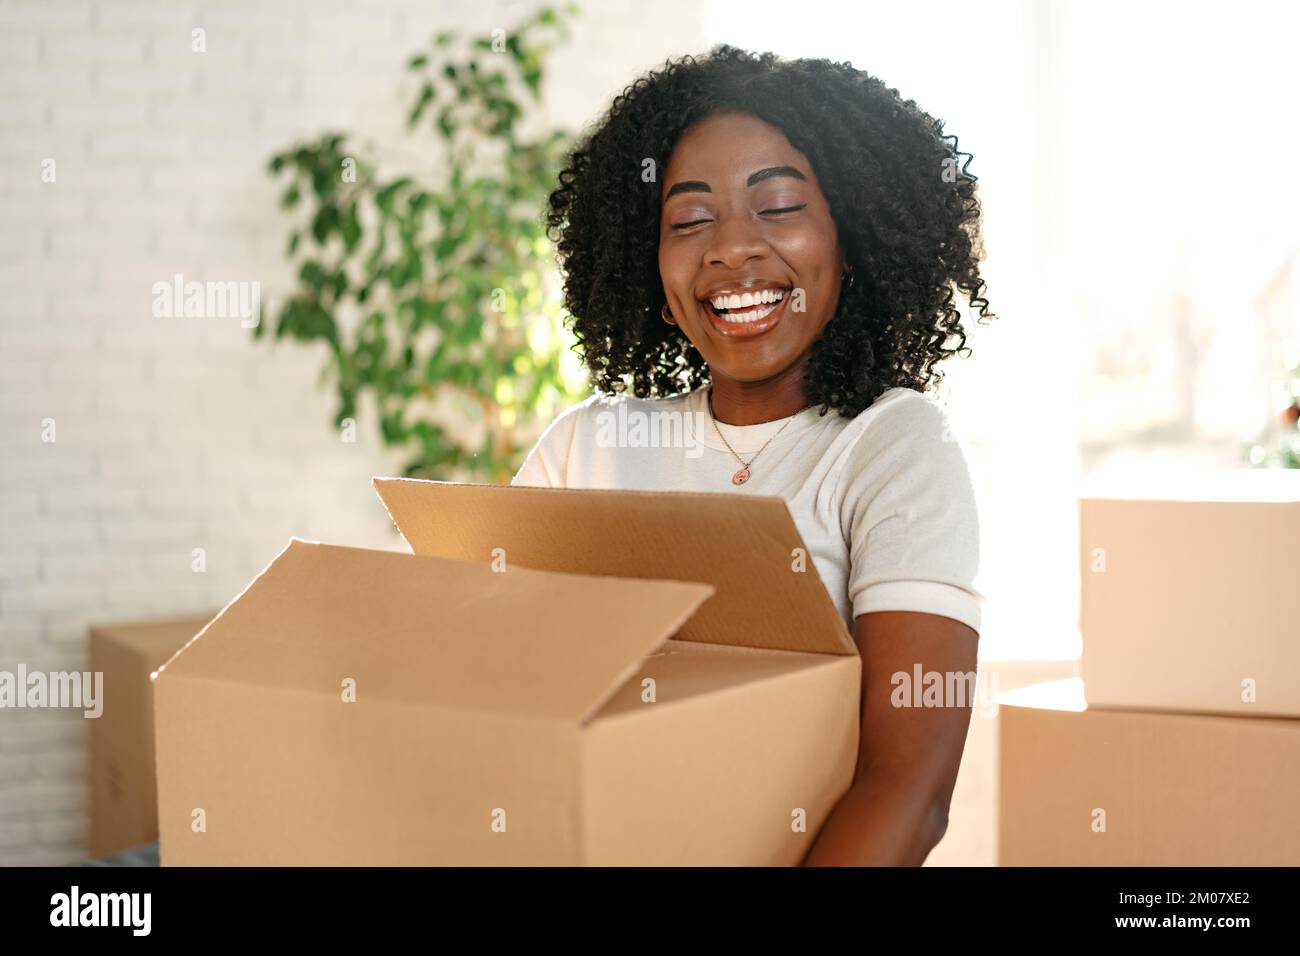 Felice giovane donna africana con scatola di cartone che si sposta in un nuovo posto Foto Stock